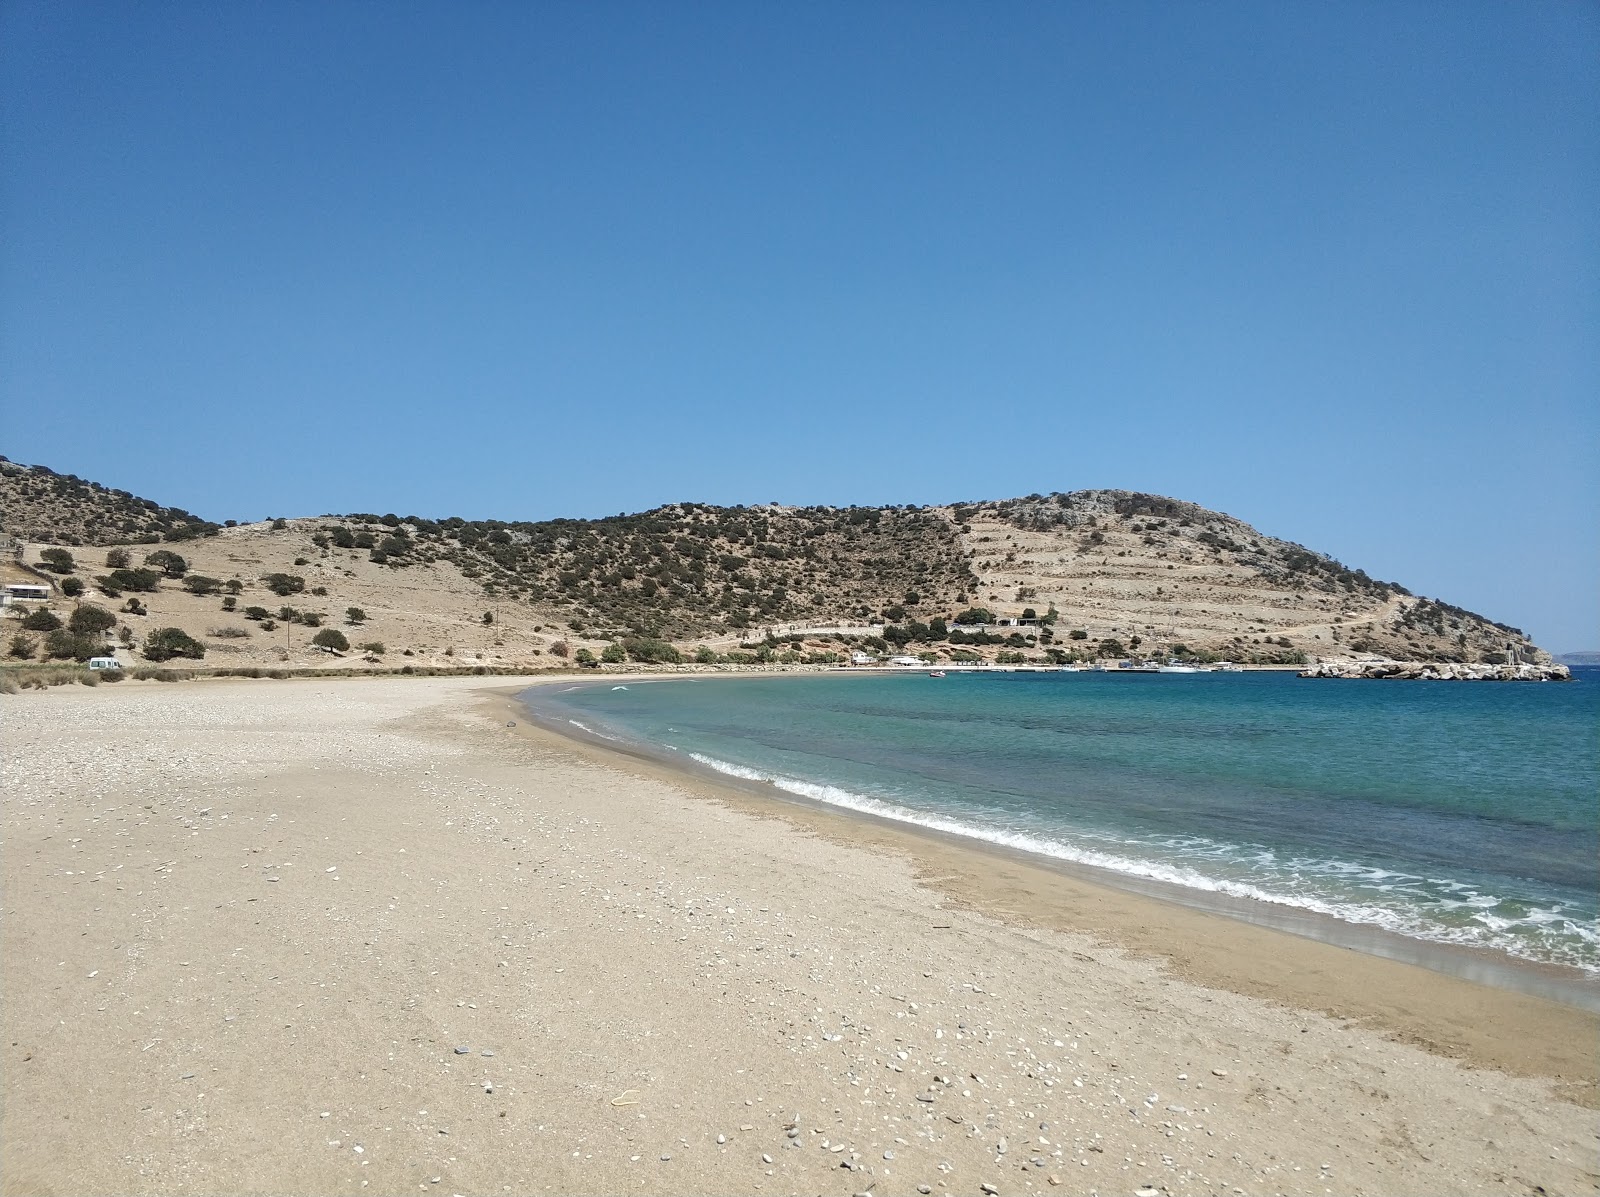 Kalados Plajı'in fotoğrafı parlak kum yüzey ile